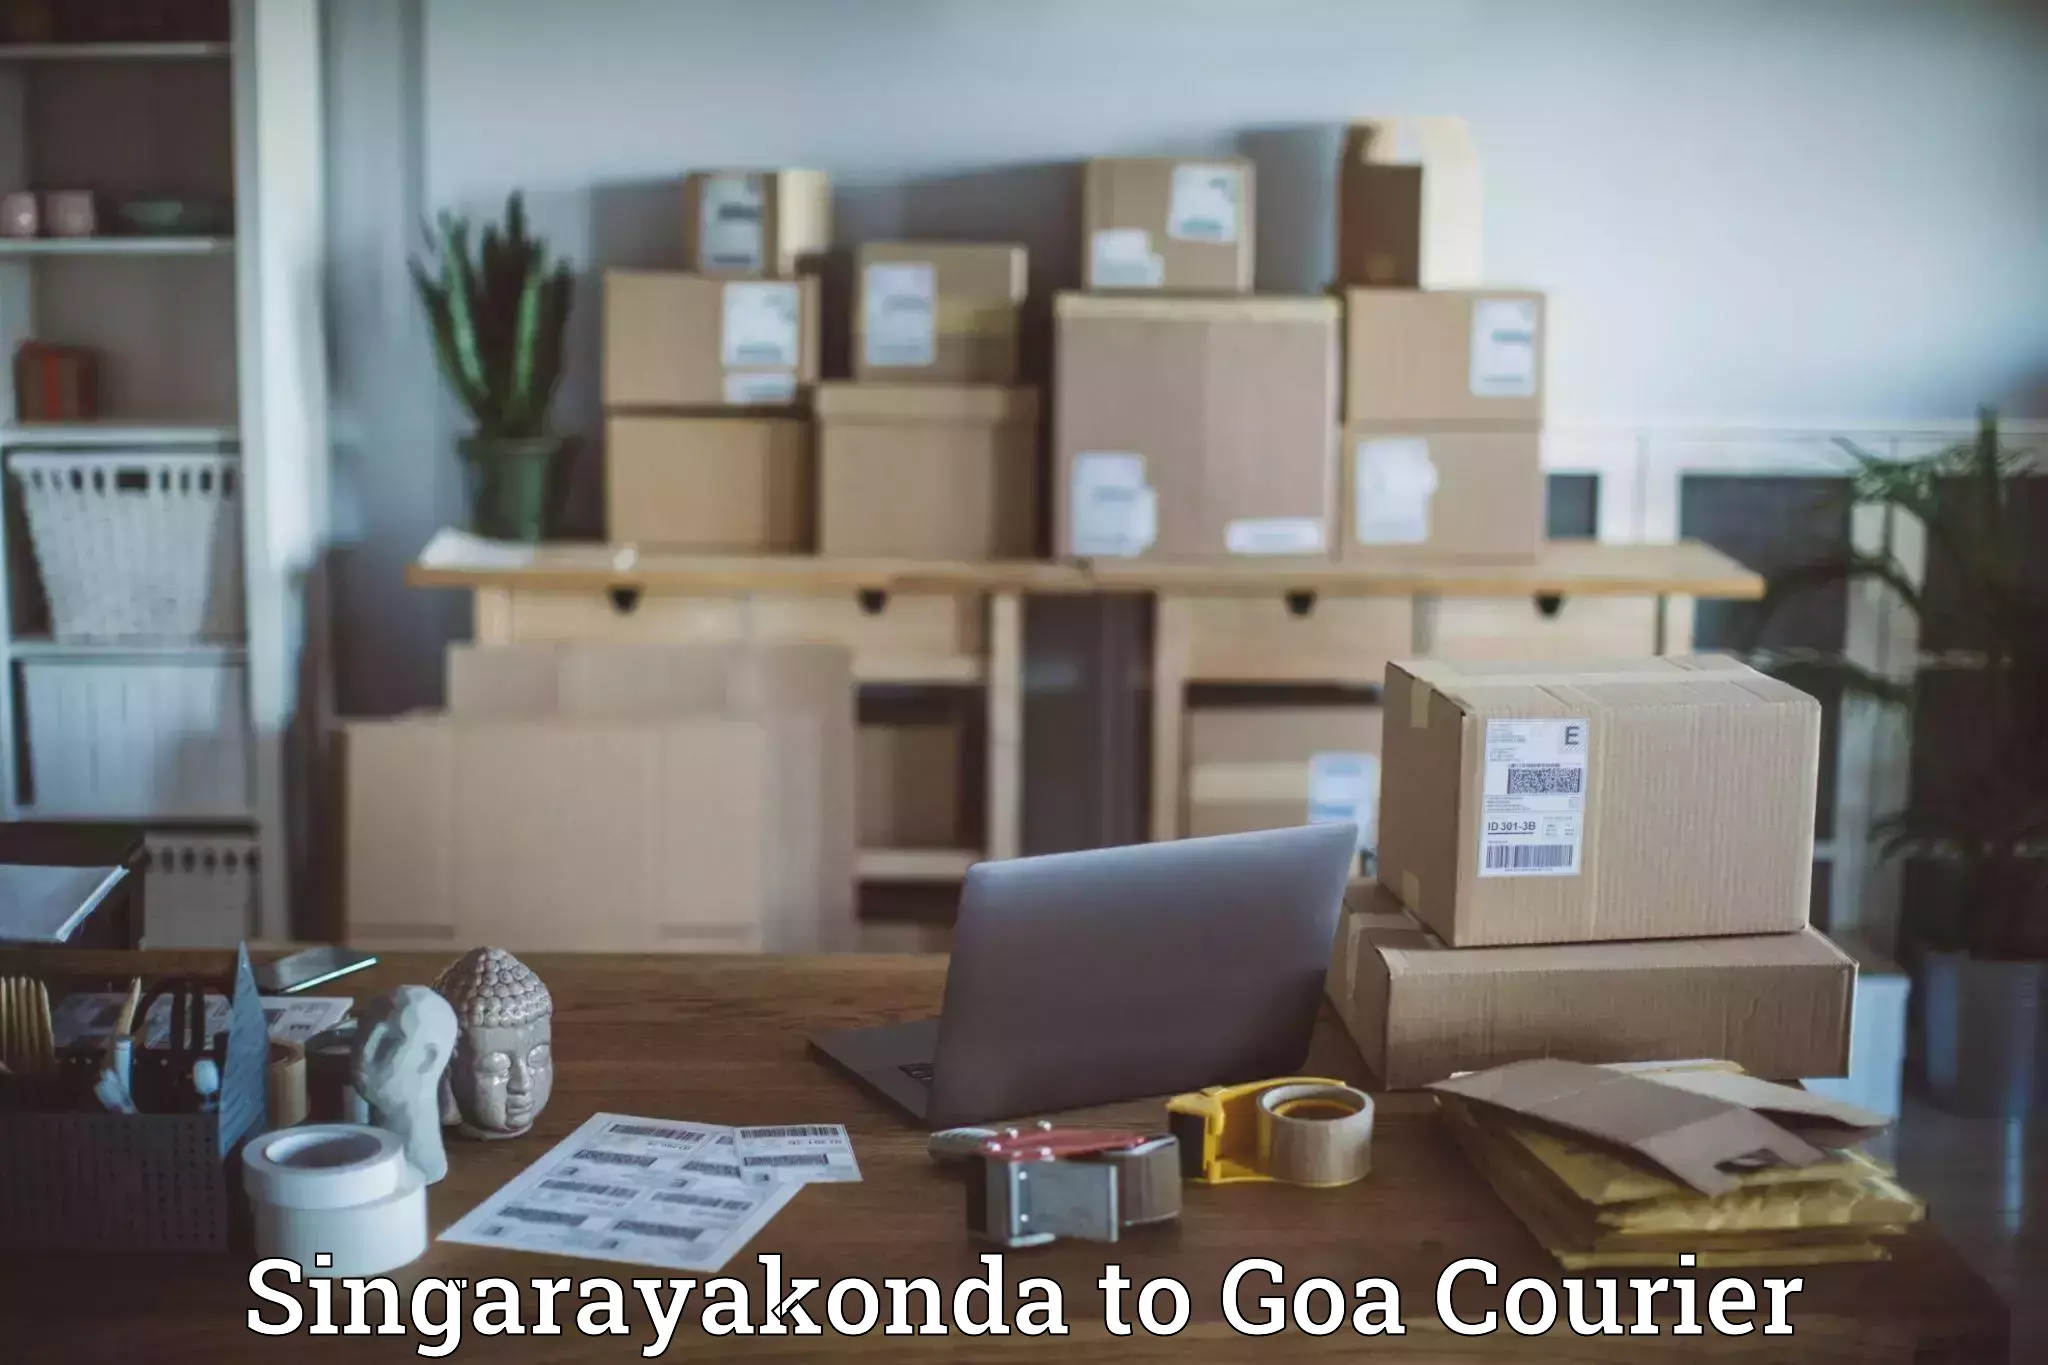 Comprehensive shipping network Singarayakonda to Goa